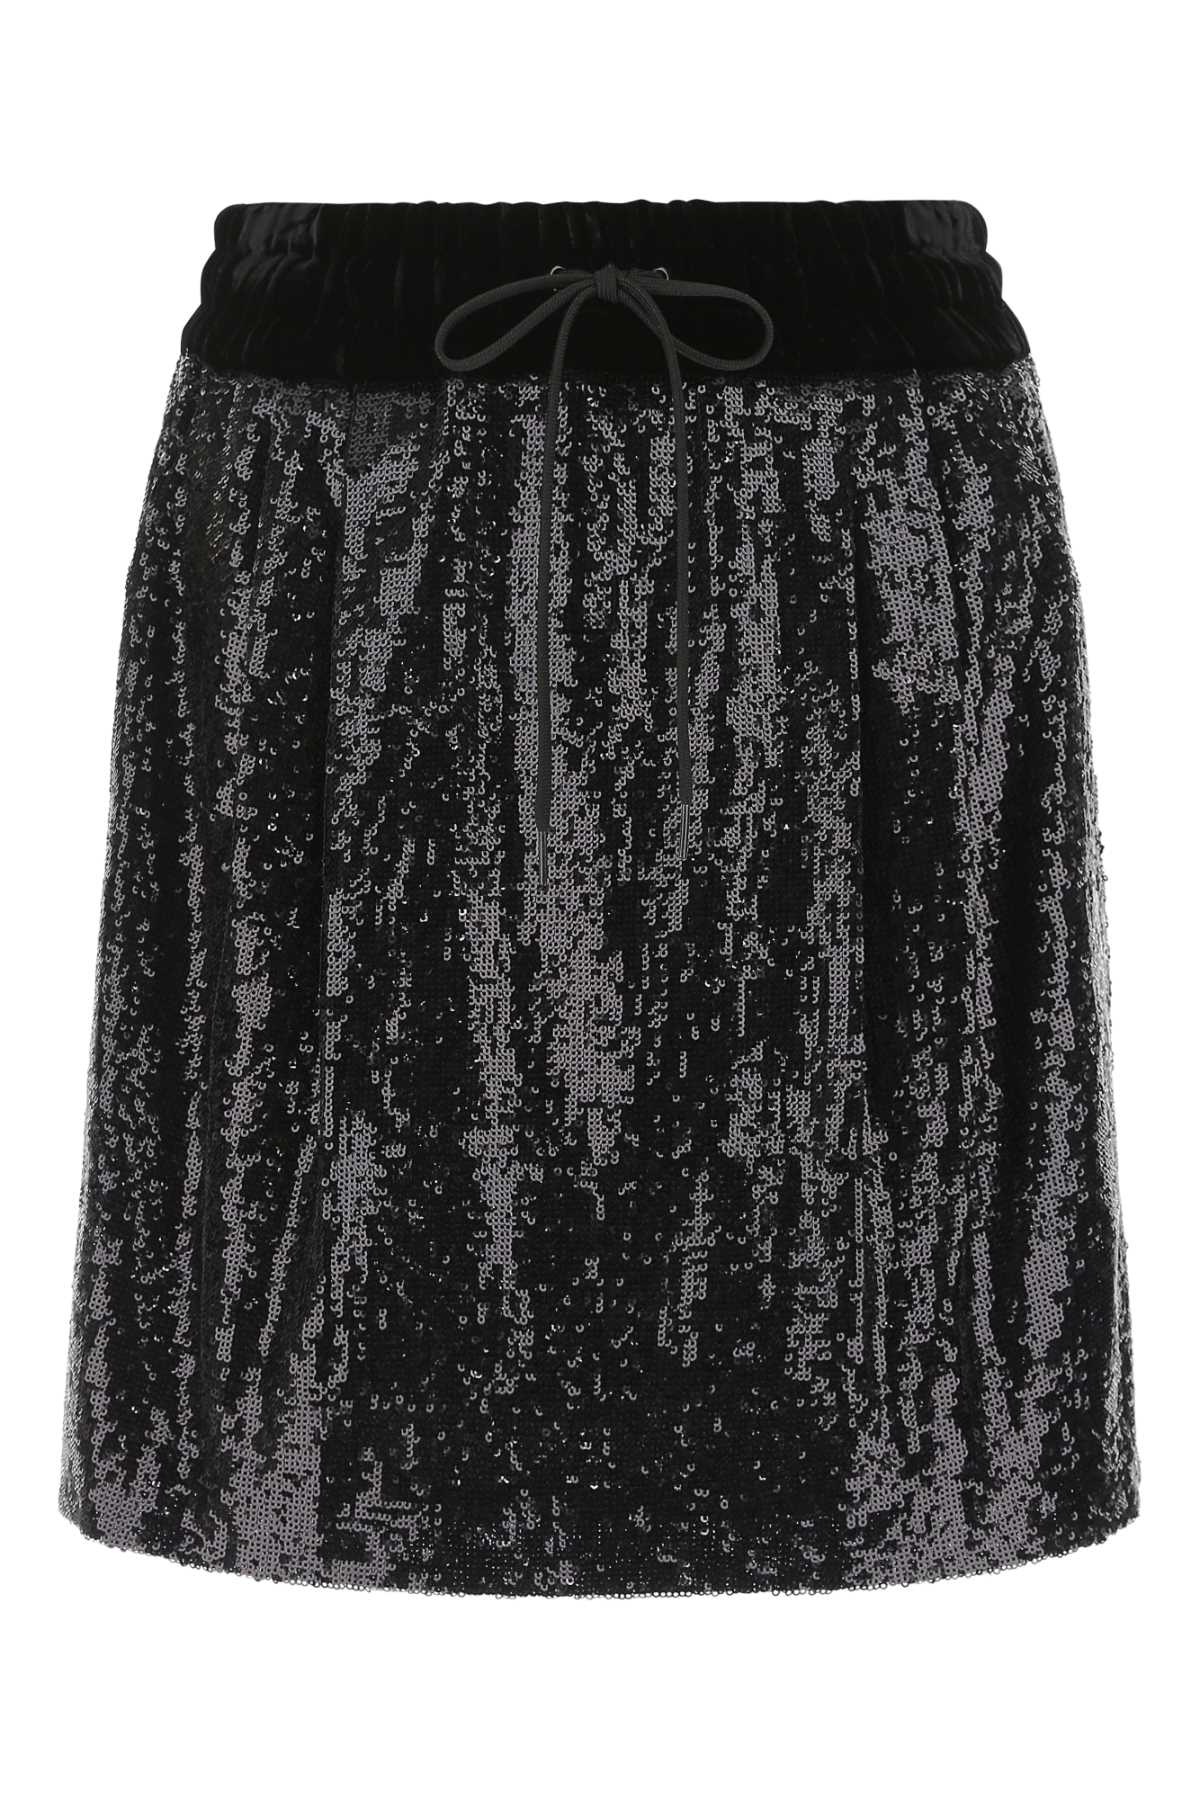 Miu Miu Black Sequins Mini Skirt In F0002